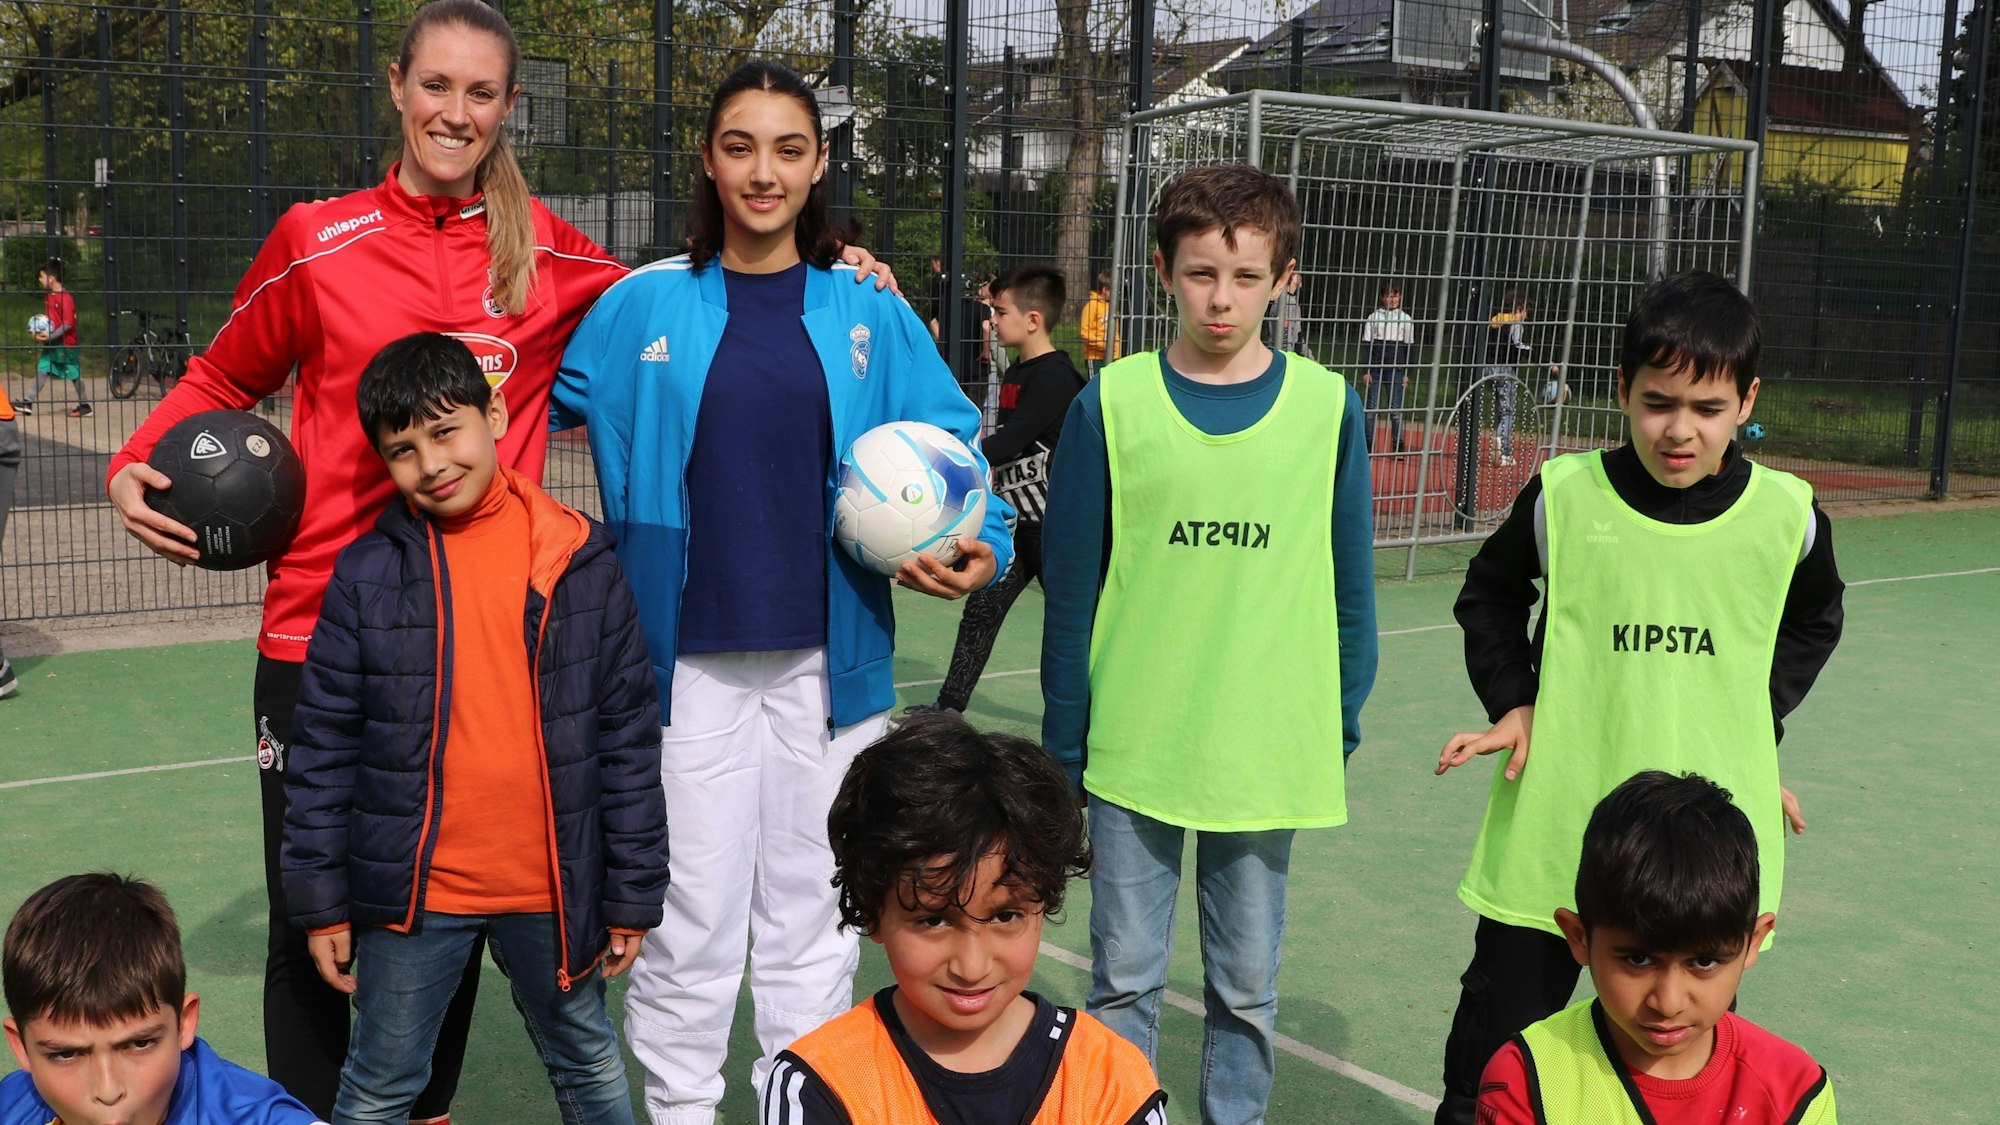 Ex-FC Profispielerin Nina Windmüller steht vor einem Fußballtor umgeben von Kindern in bunten Trikots.